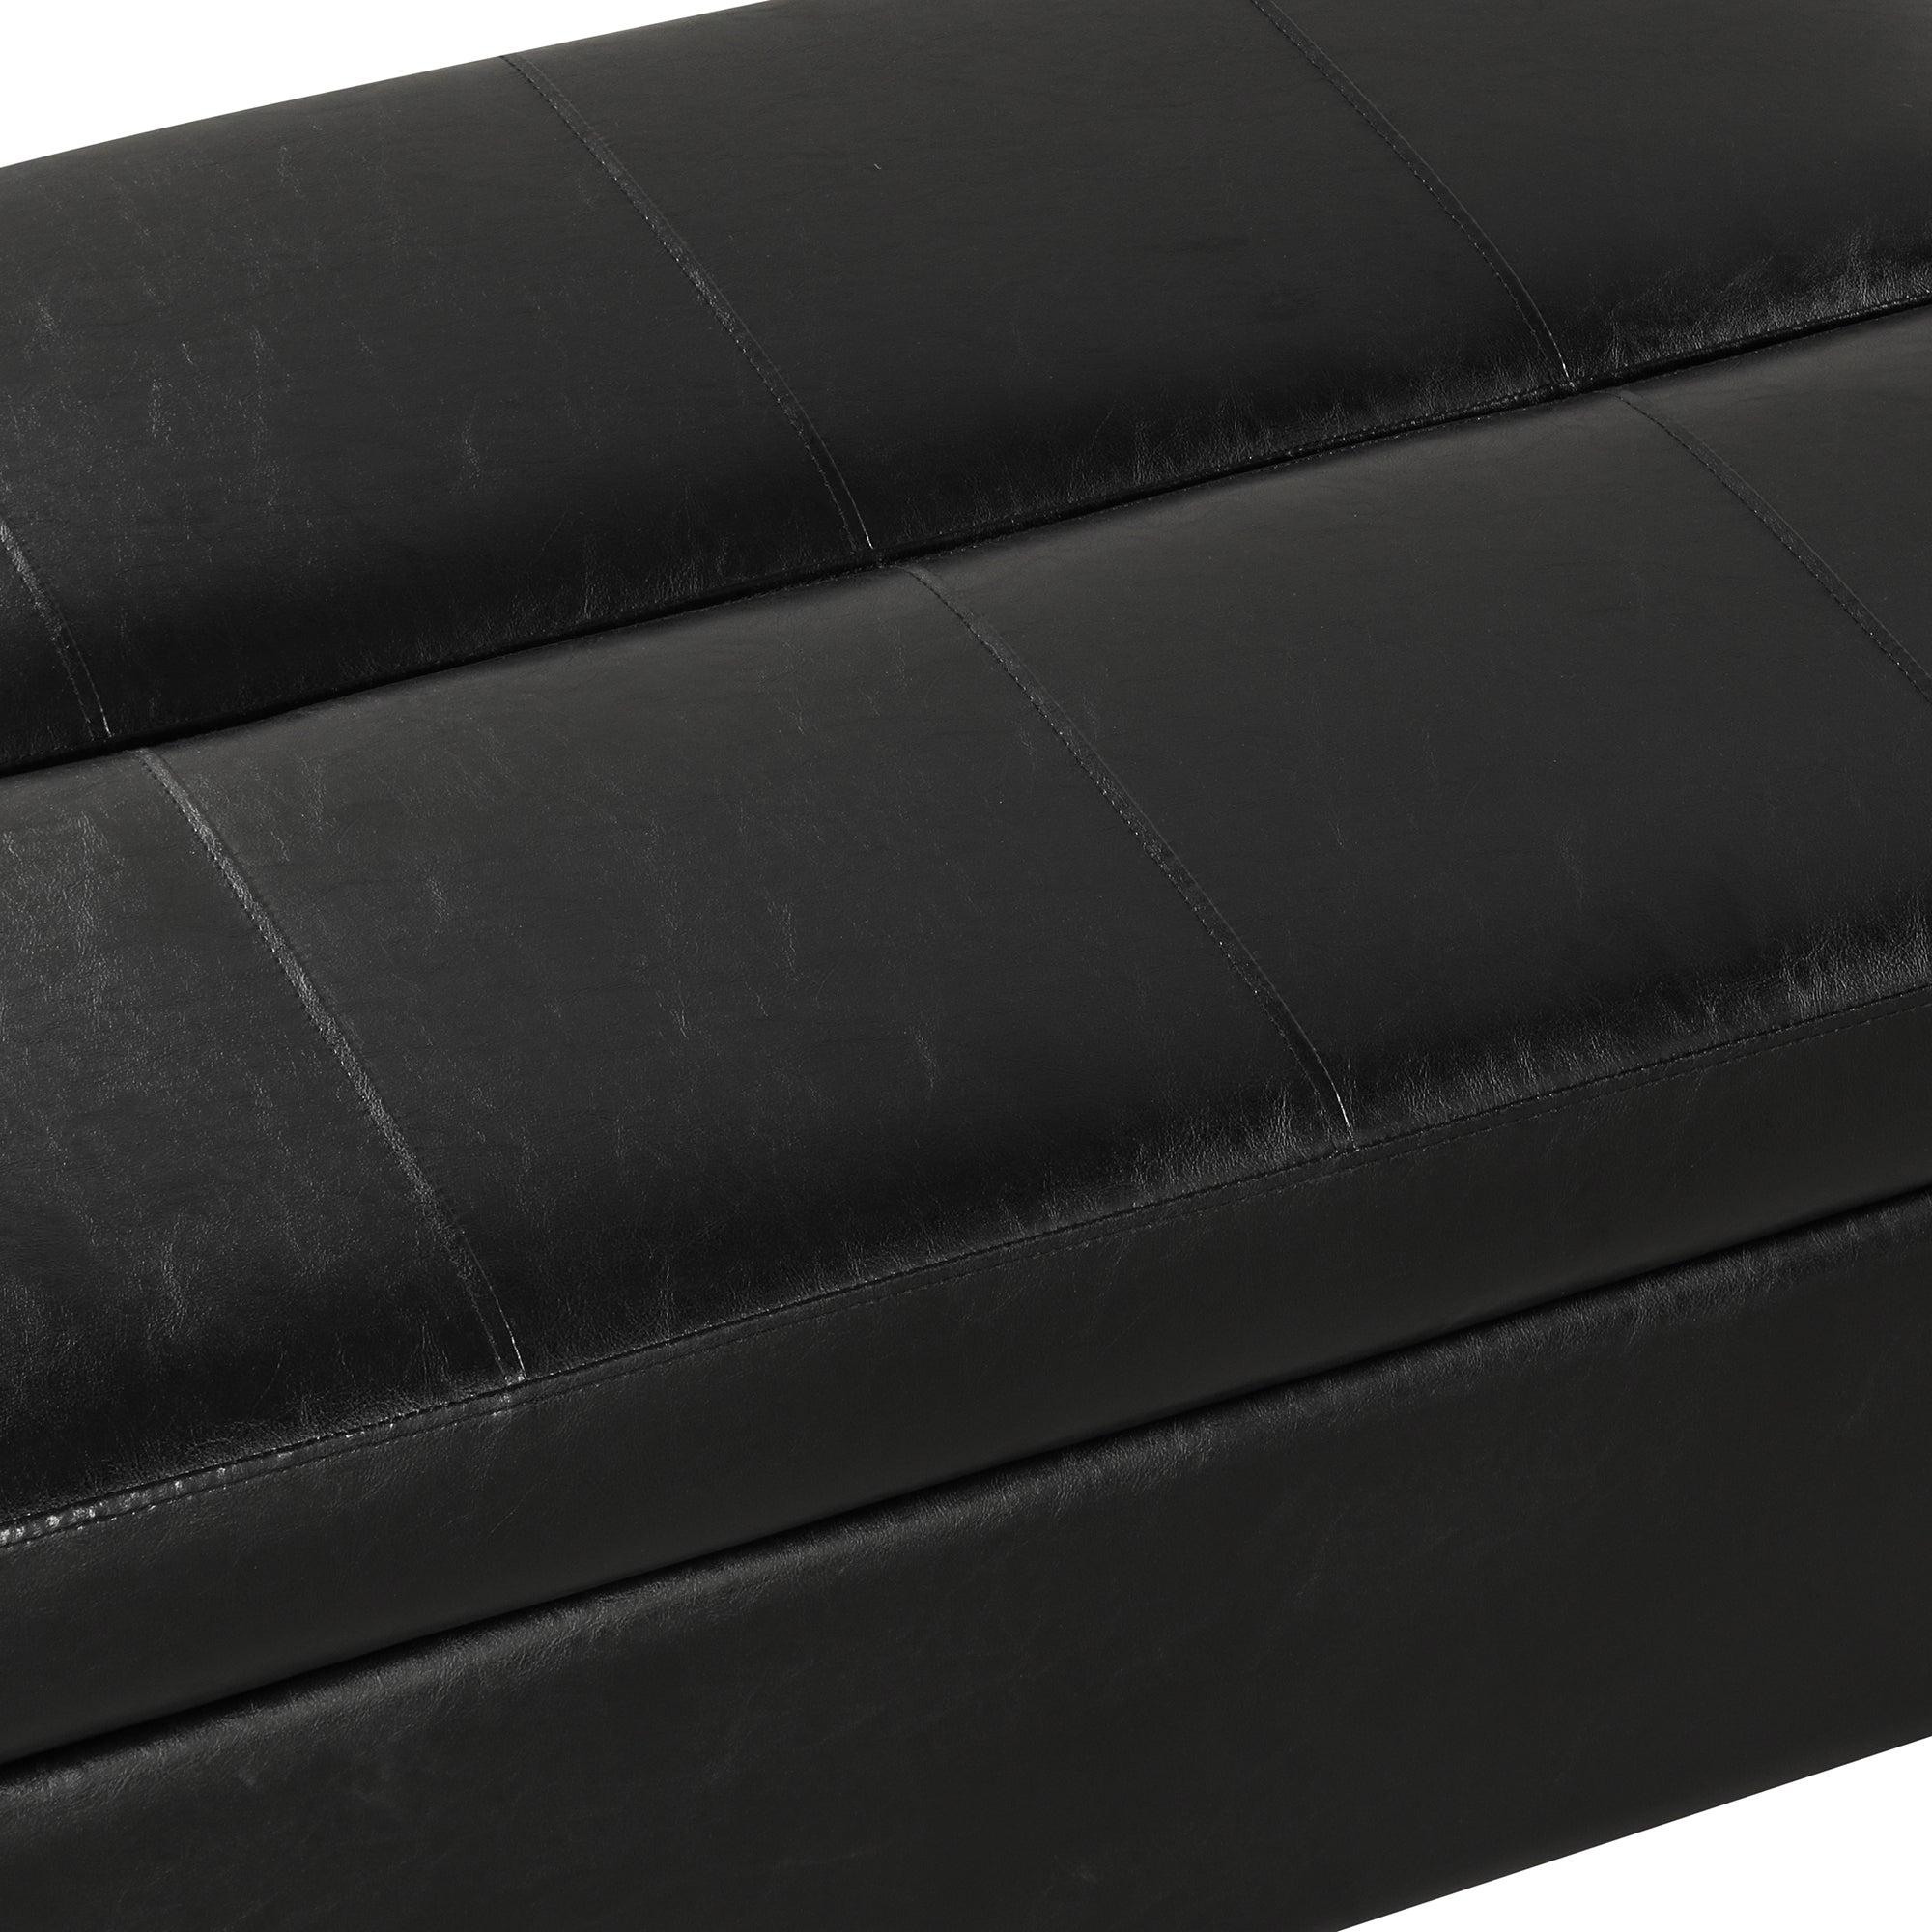 Twin Size Folding Ottoman Sleeper Bed with Mattress black pu-foam-pu